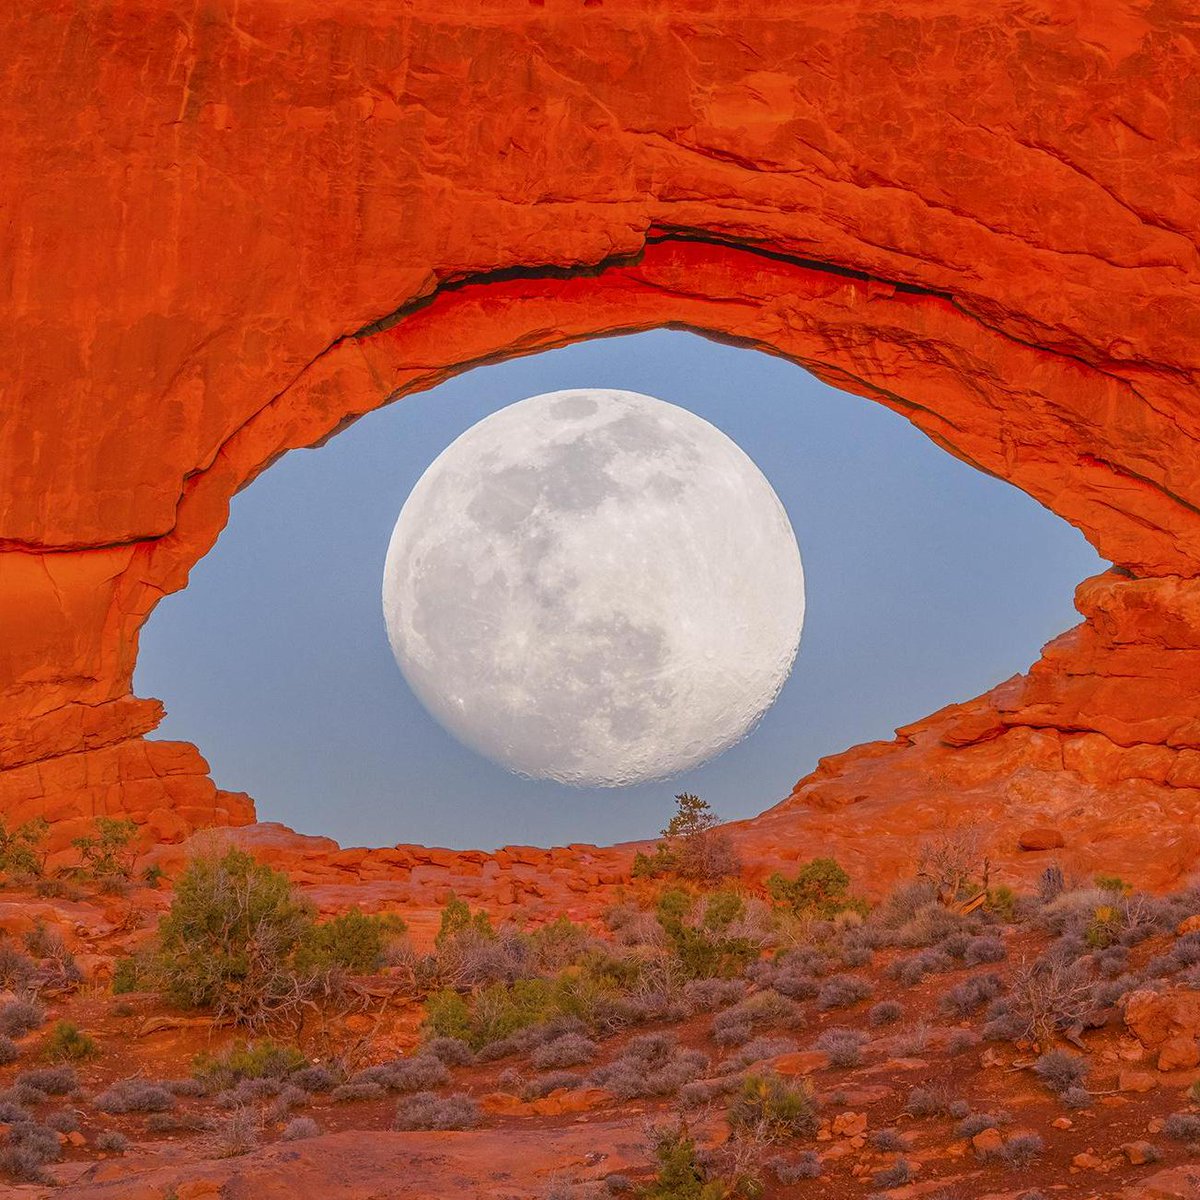 Eye of the moon